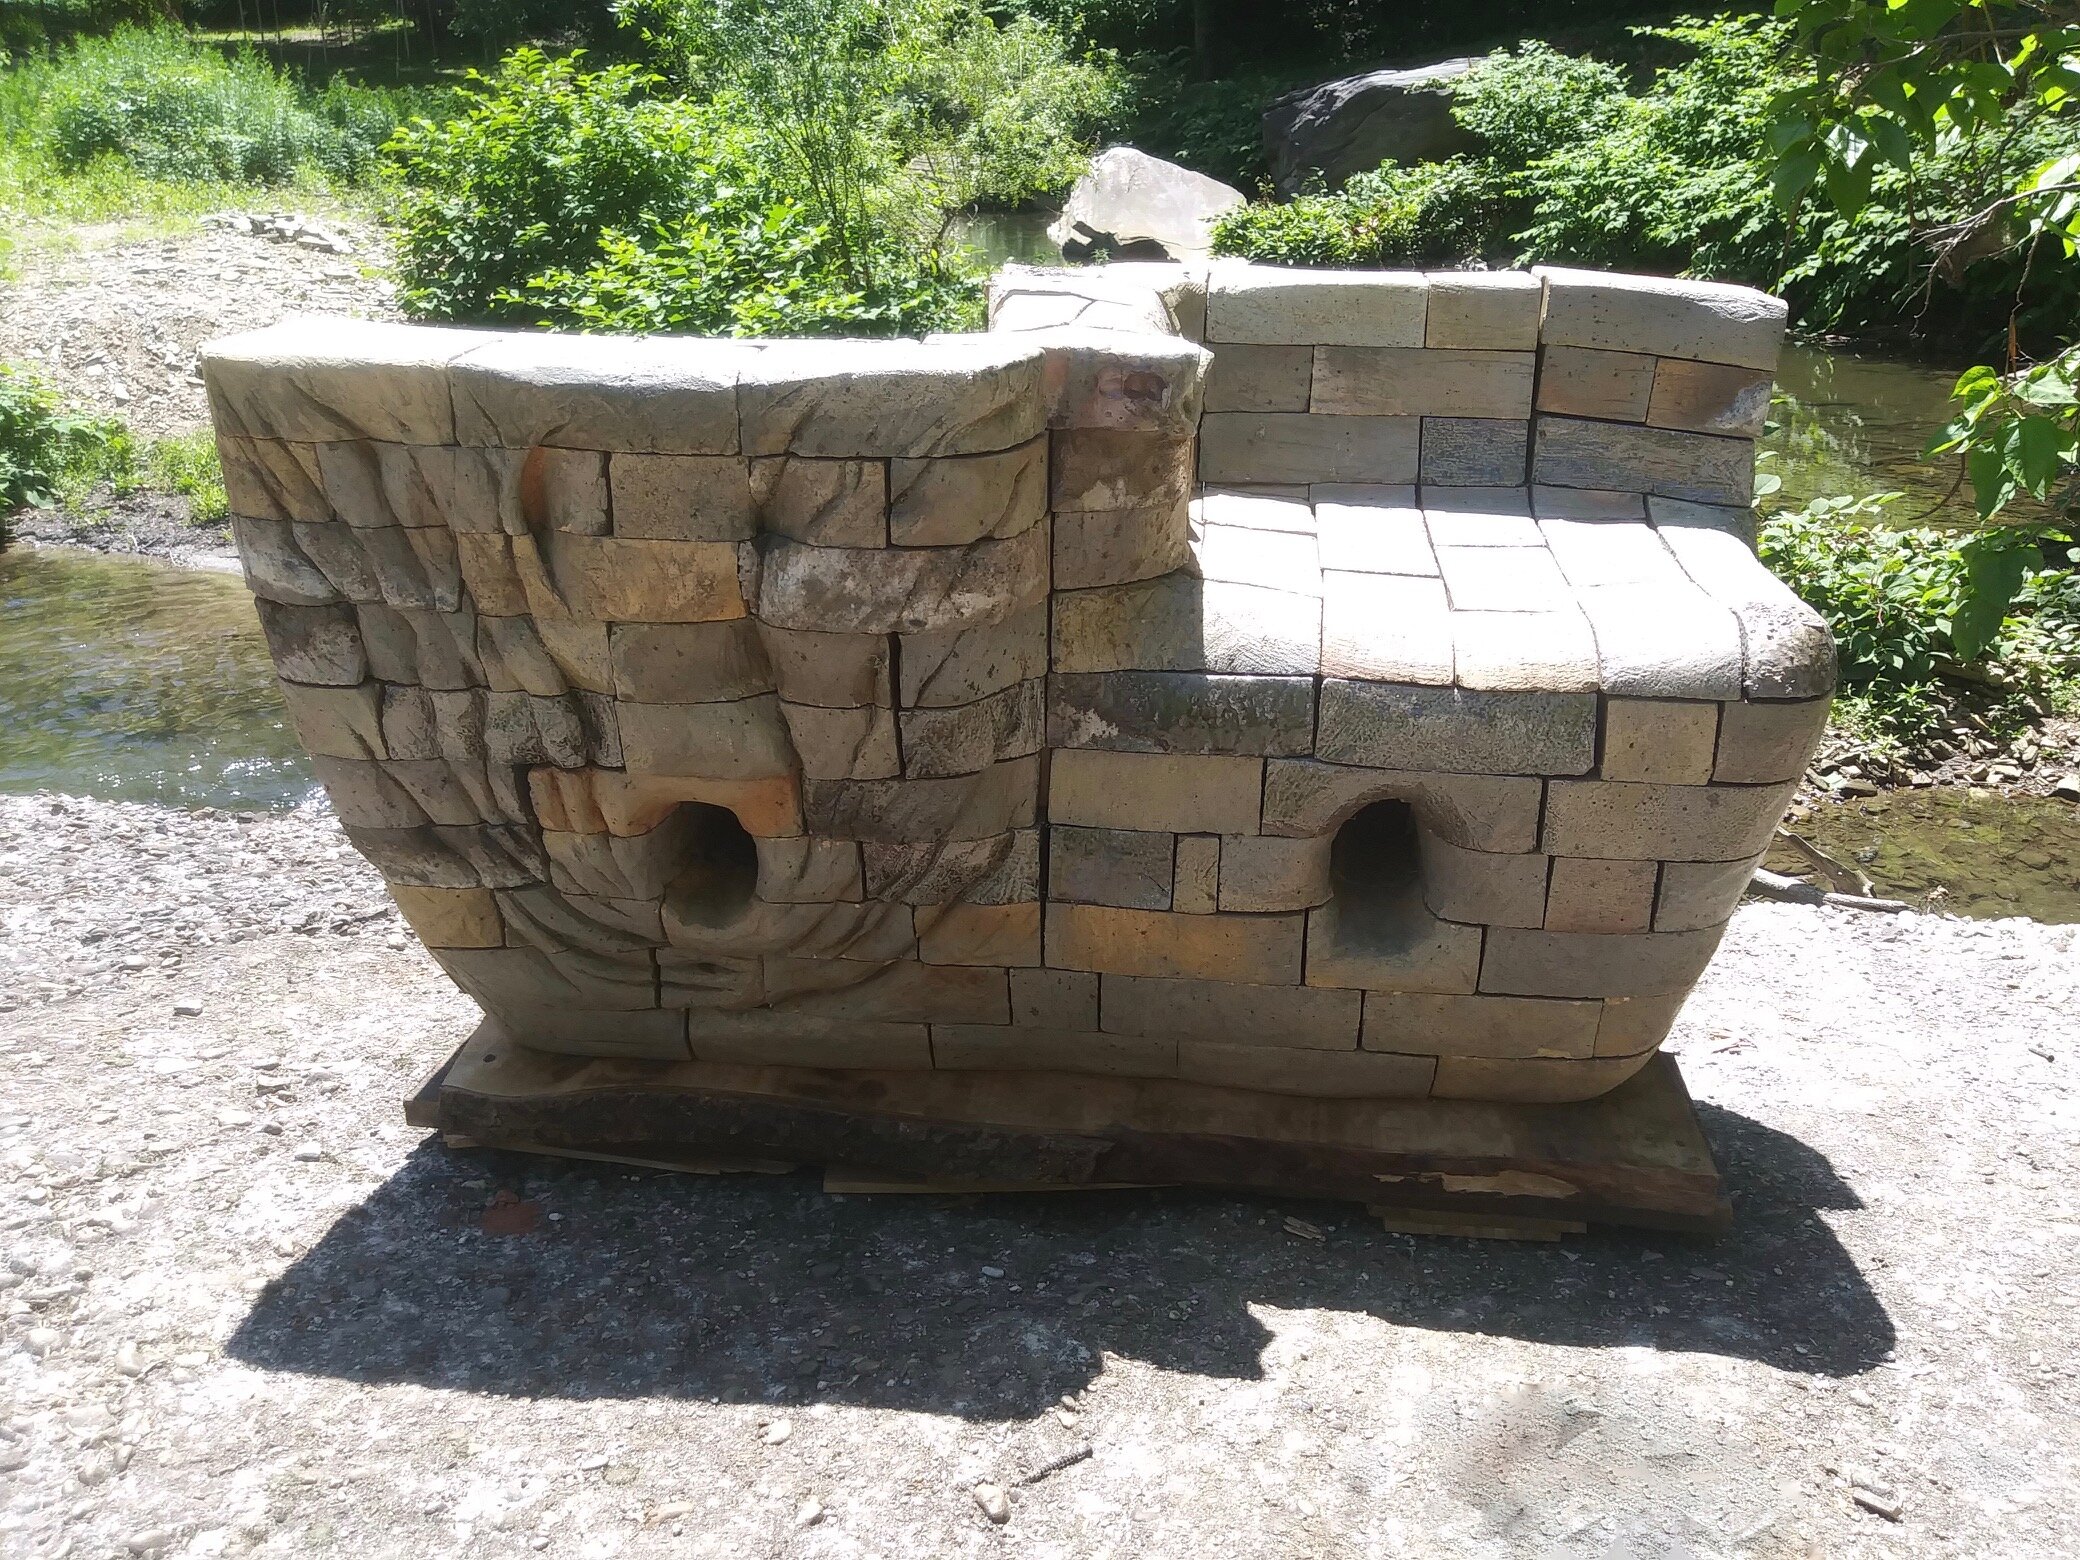 Tete a Tete or Salt Bench-Salt fired garden bench, here installed next to stream